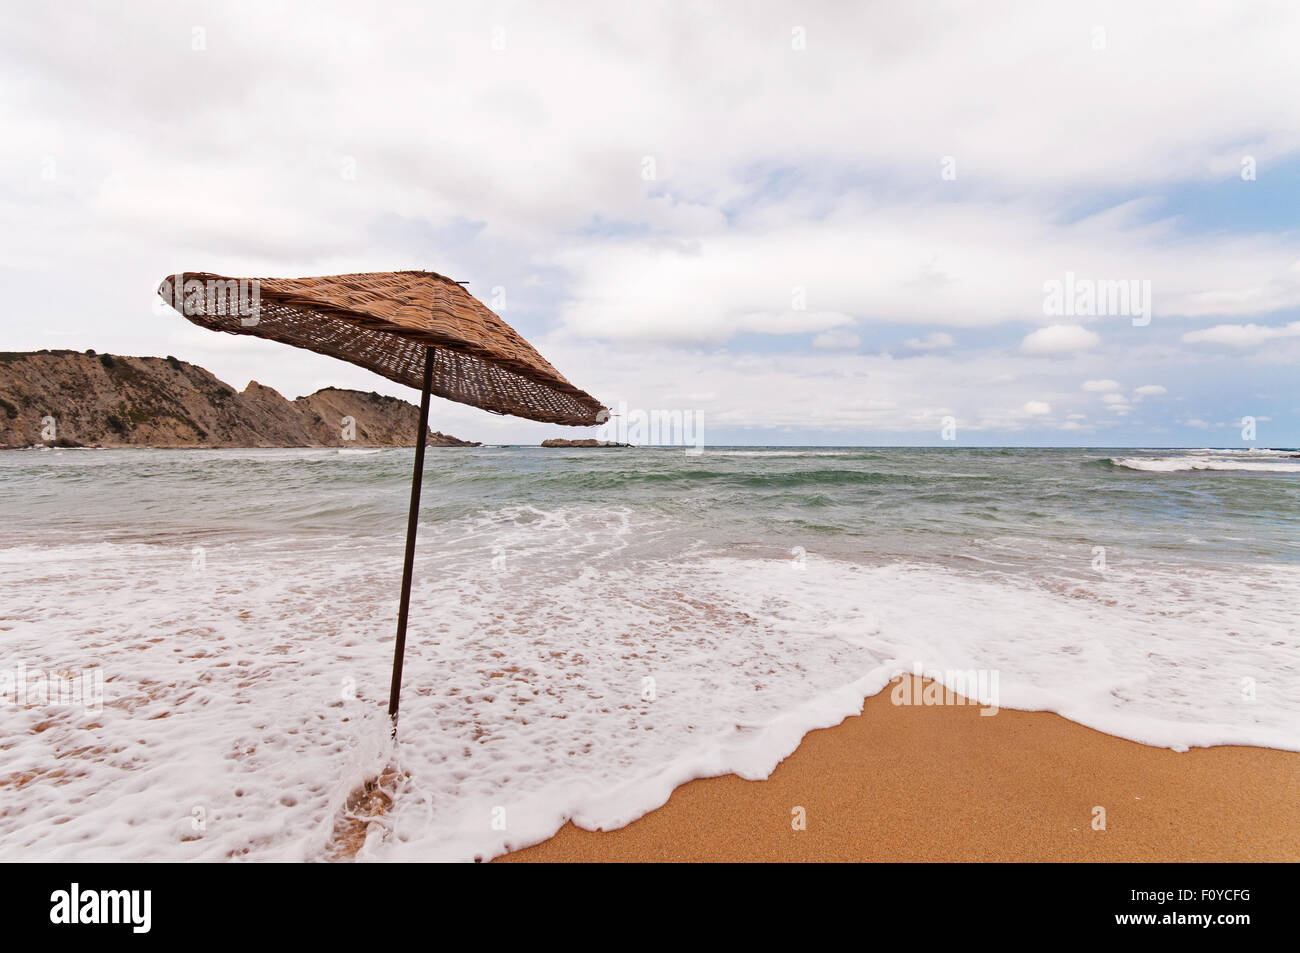 Bella vista da blacksea, Turchia. Mare con onde e ombrello. Foto Stock